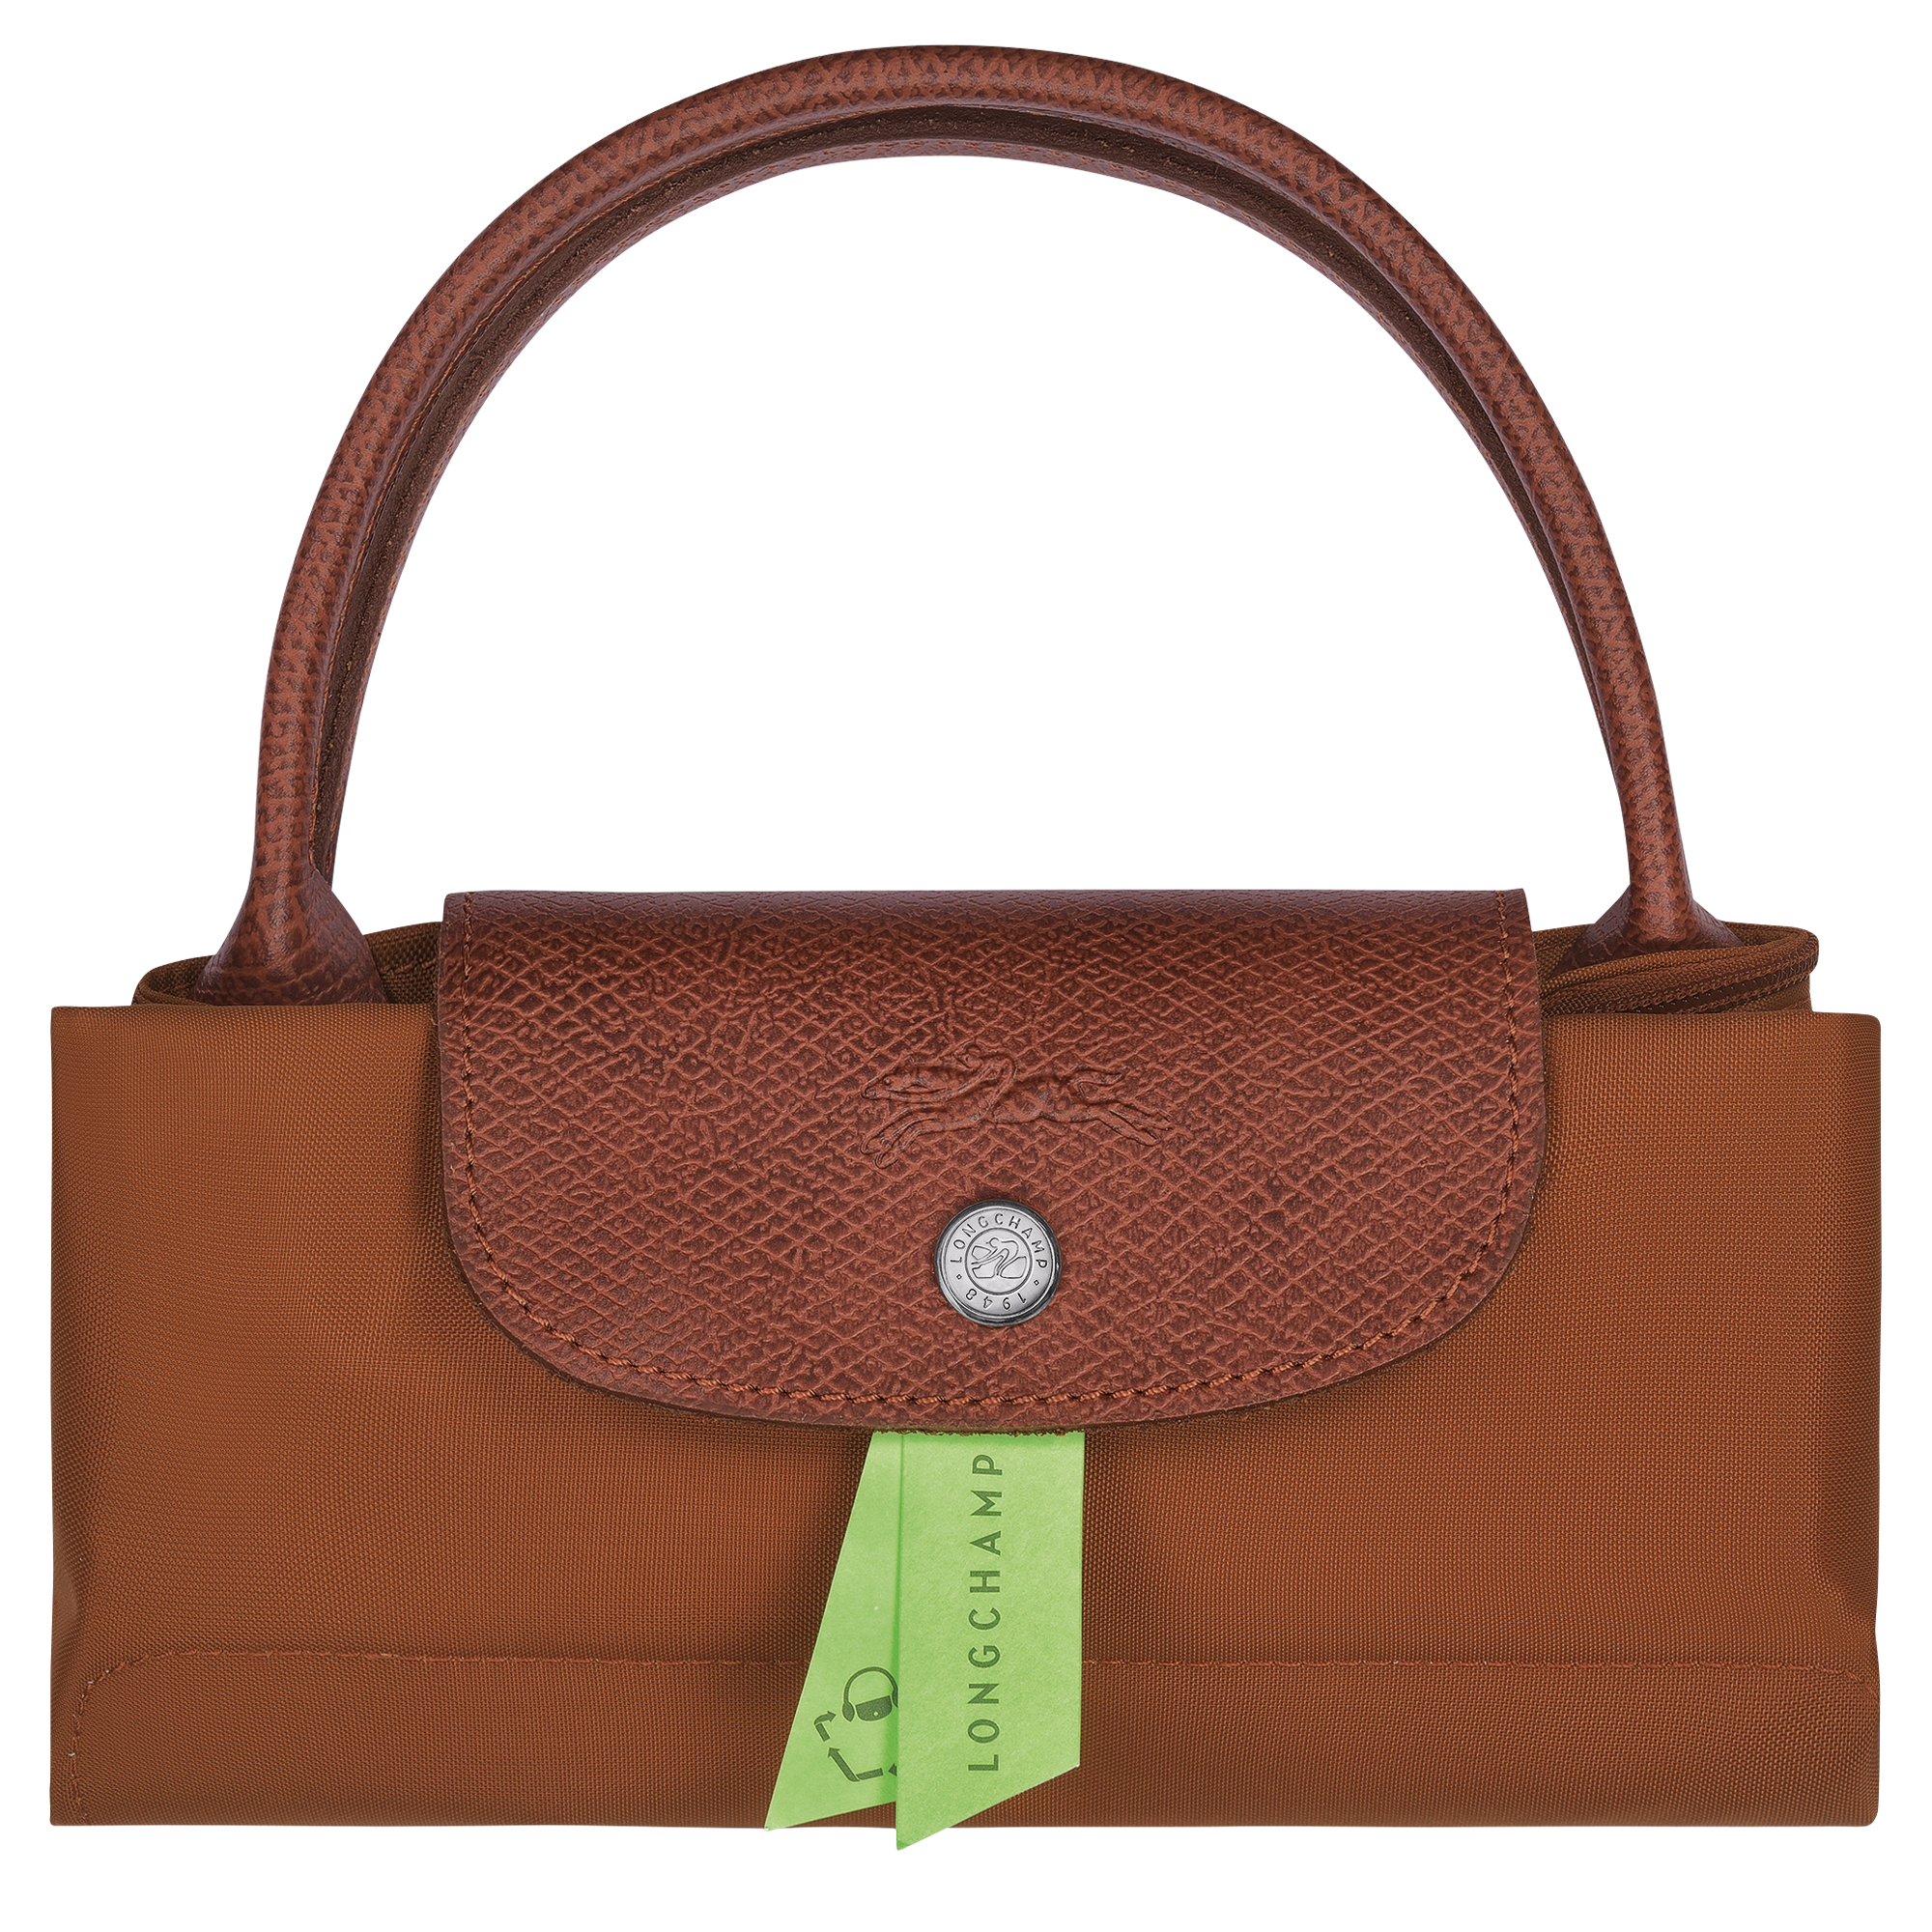 Le Pliage Green Handbag S, Cognac